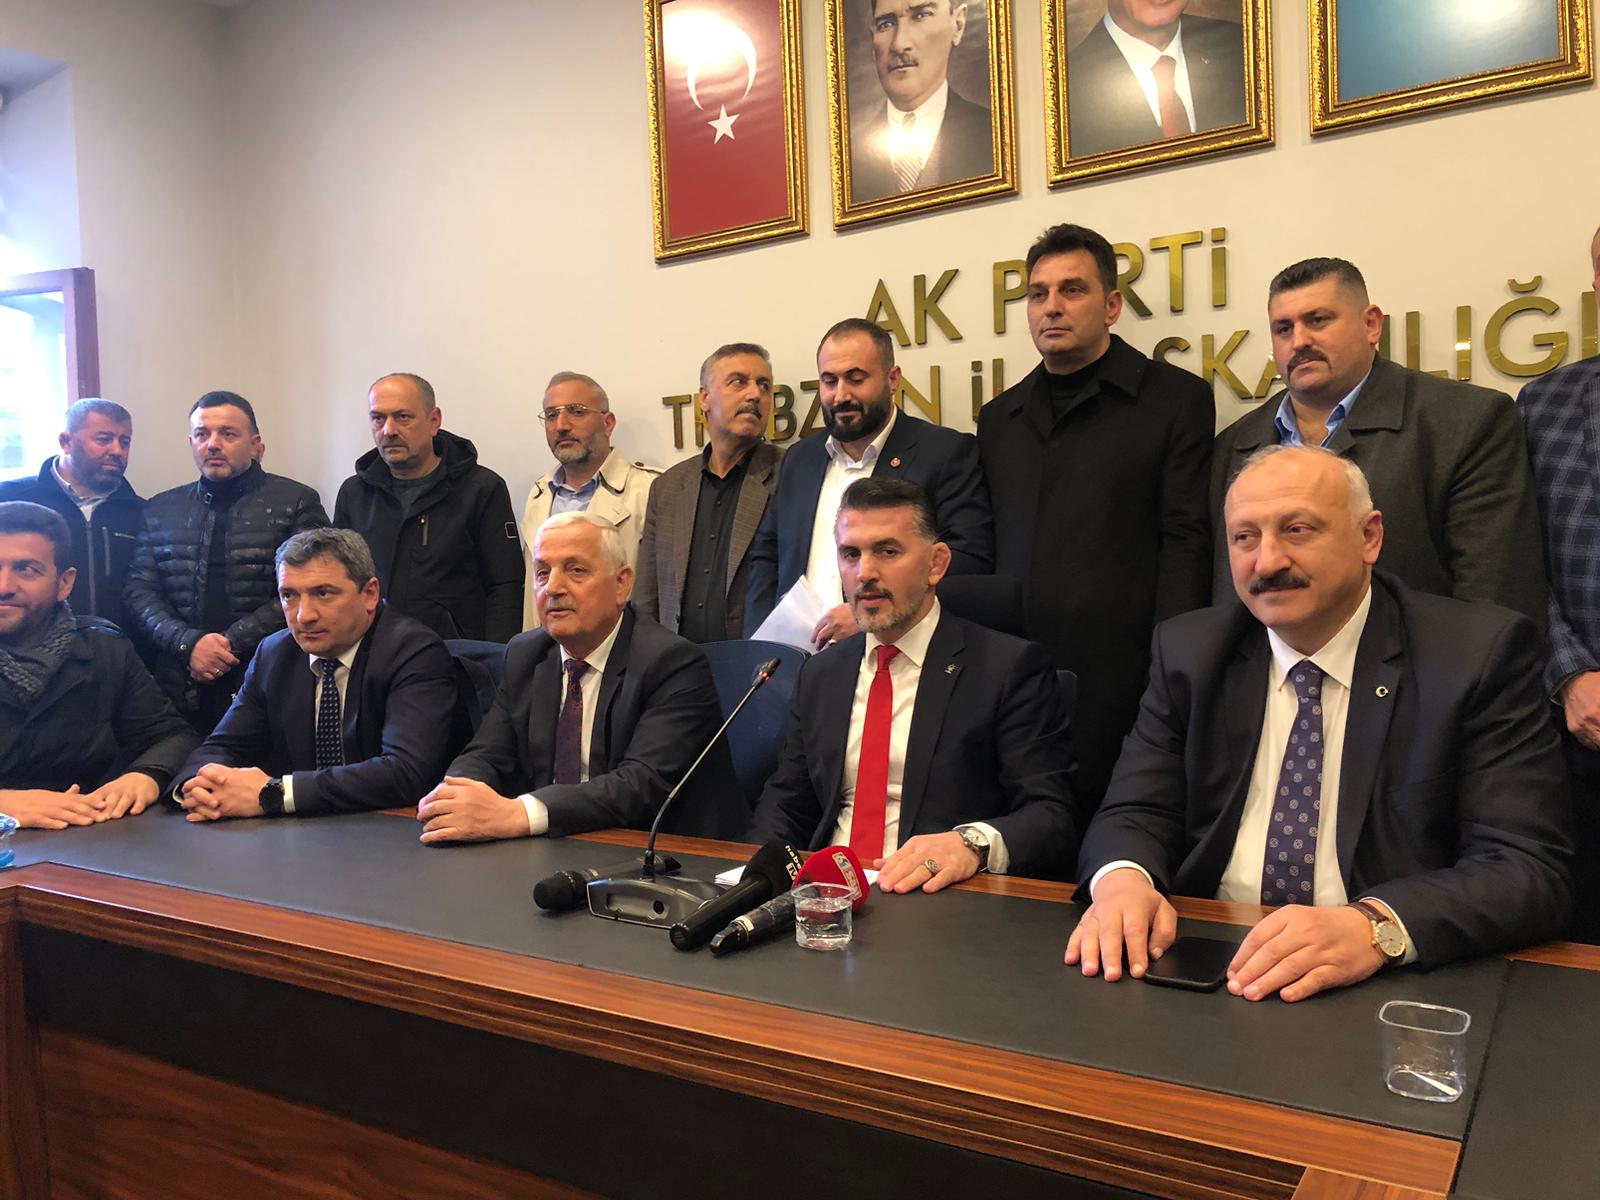 Milli Sporcu Selçuk Çebi, AK Parti Trabzon milletvekilliği aday adaylığını açıkladı 